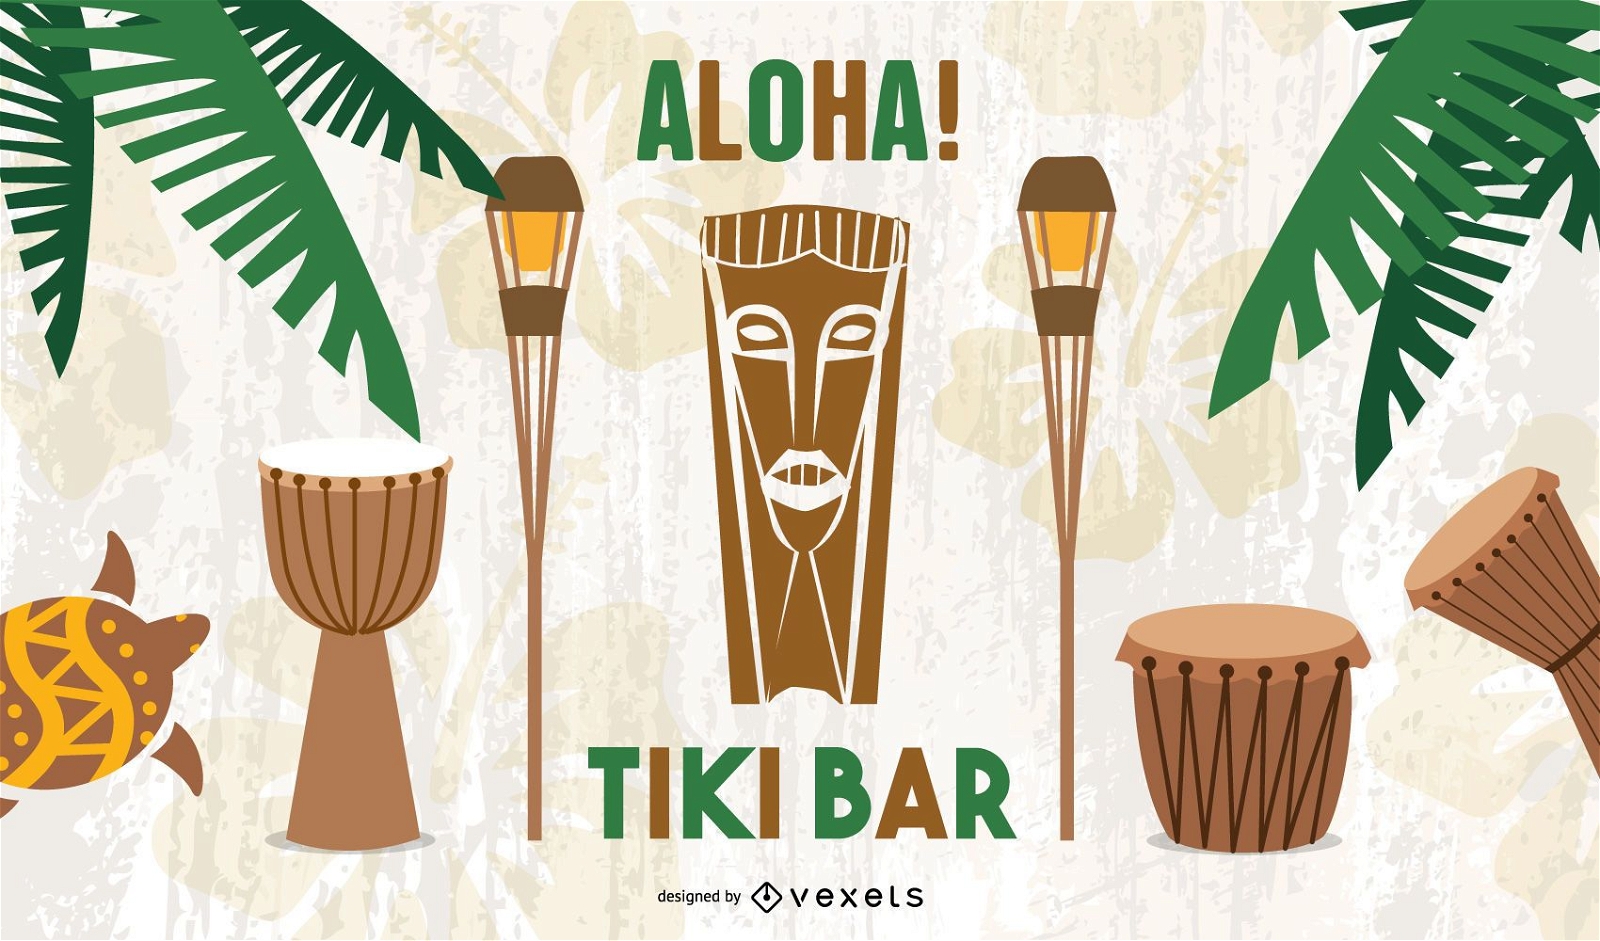 Ilustraci?n de Tiki Bar Aloha